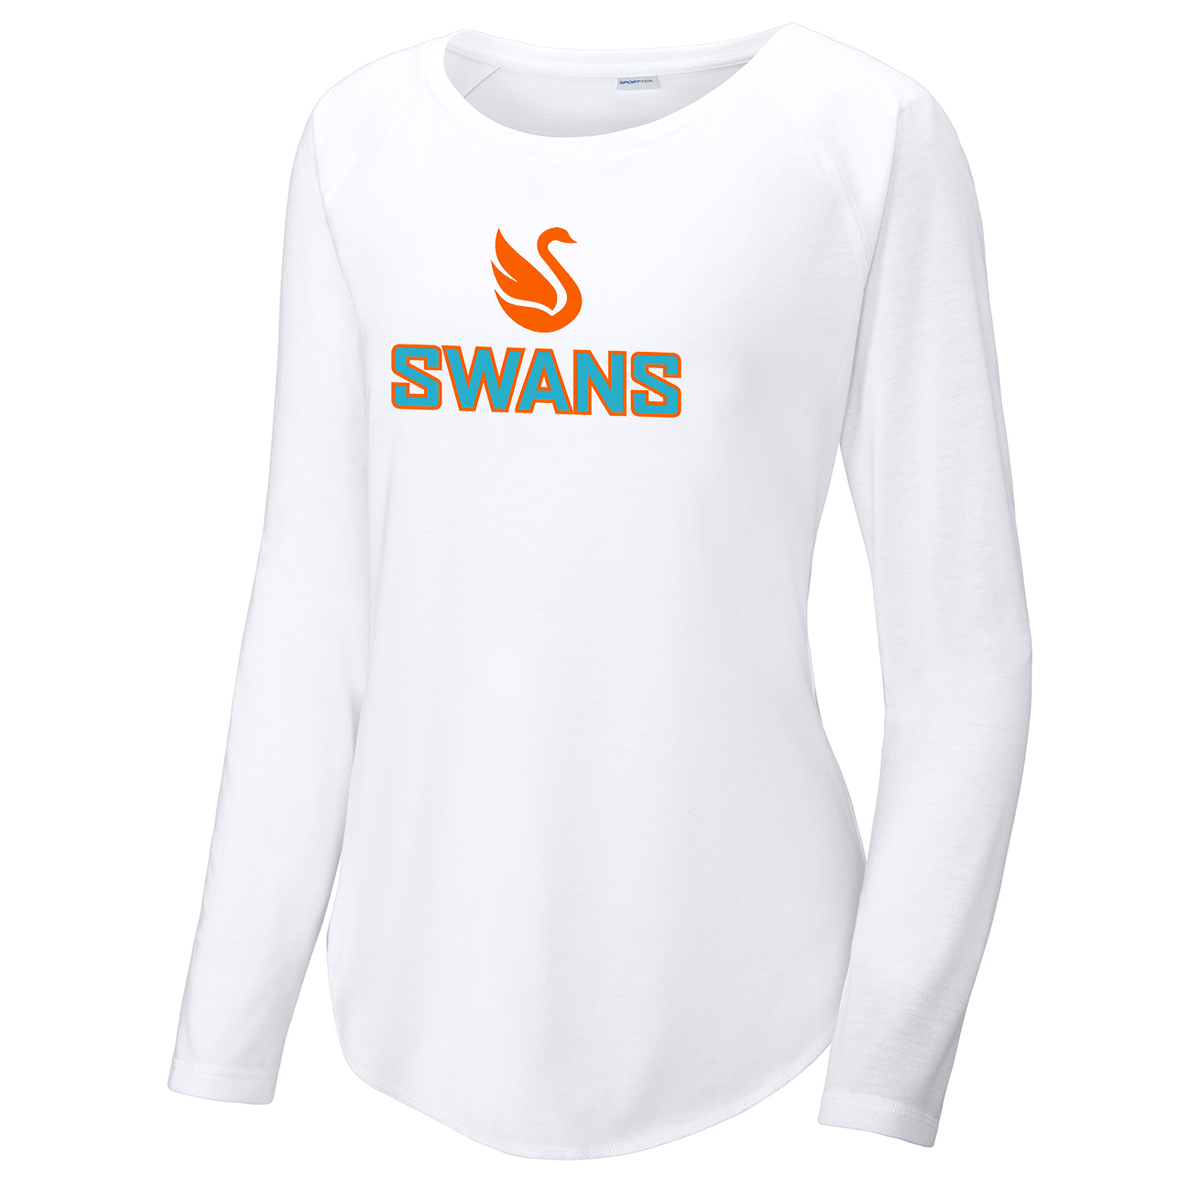 Swans Lacrosse Women's Raglan Long Sleeve CottonTouch